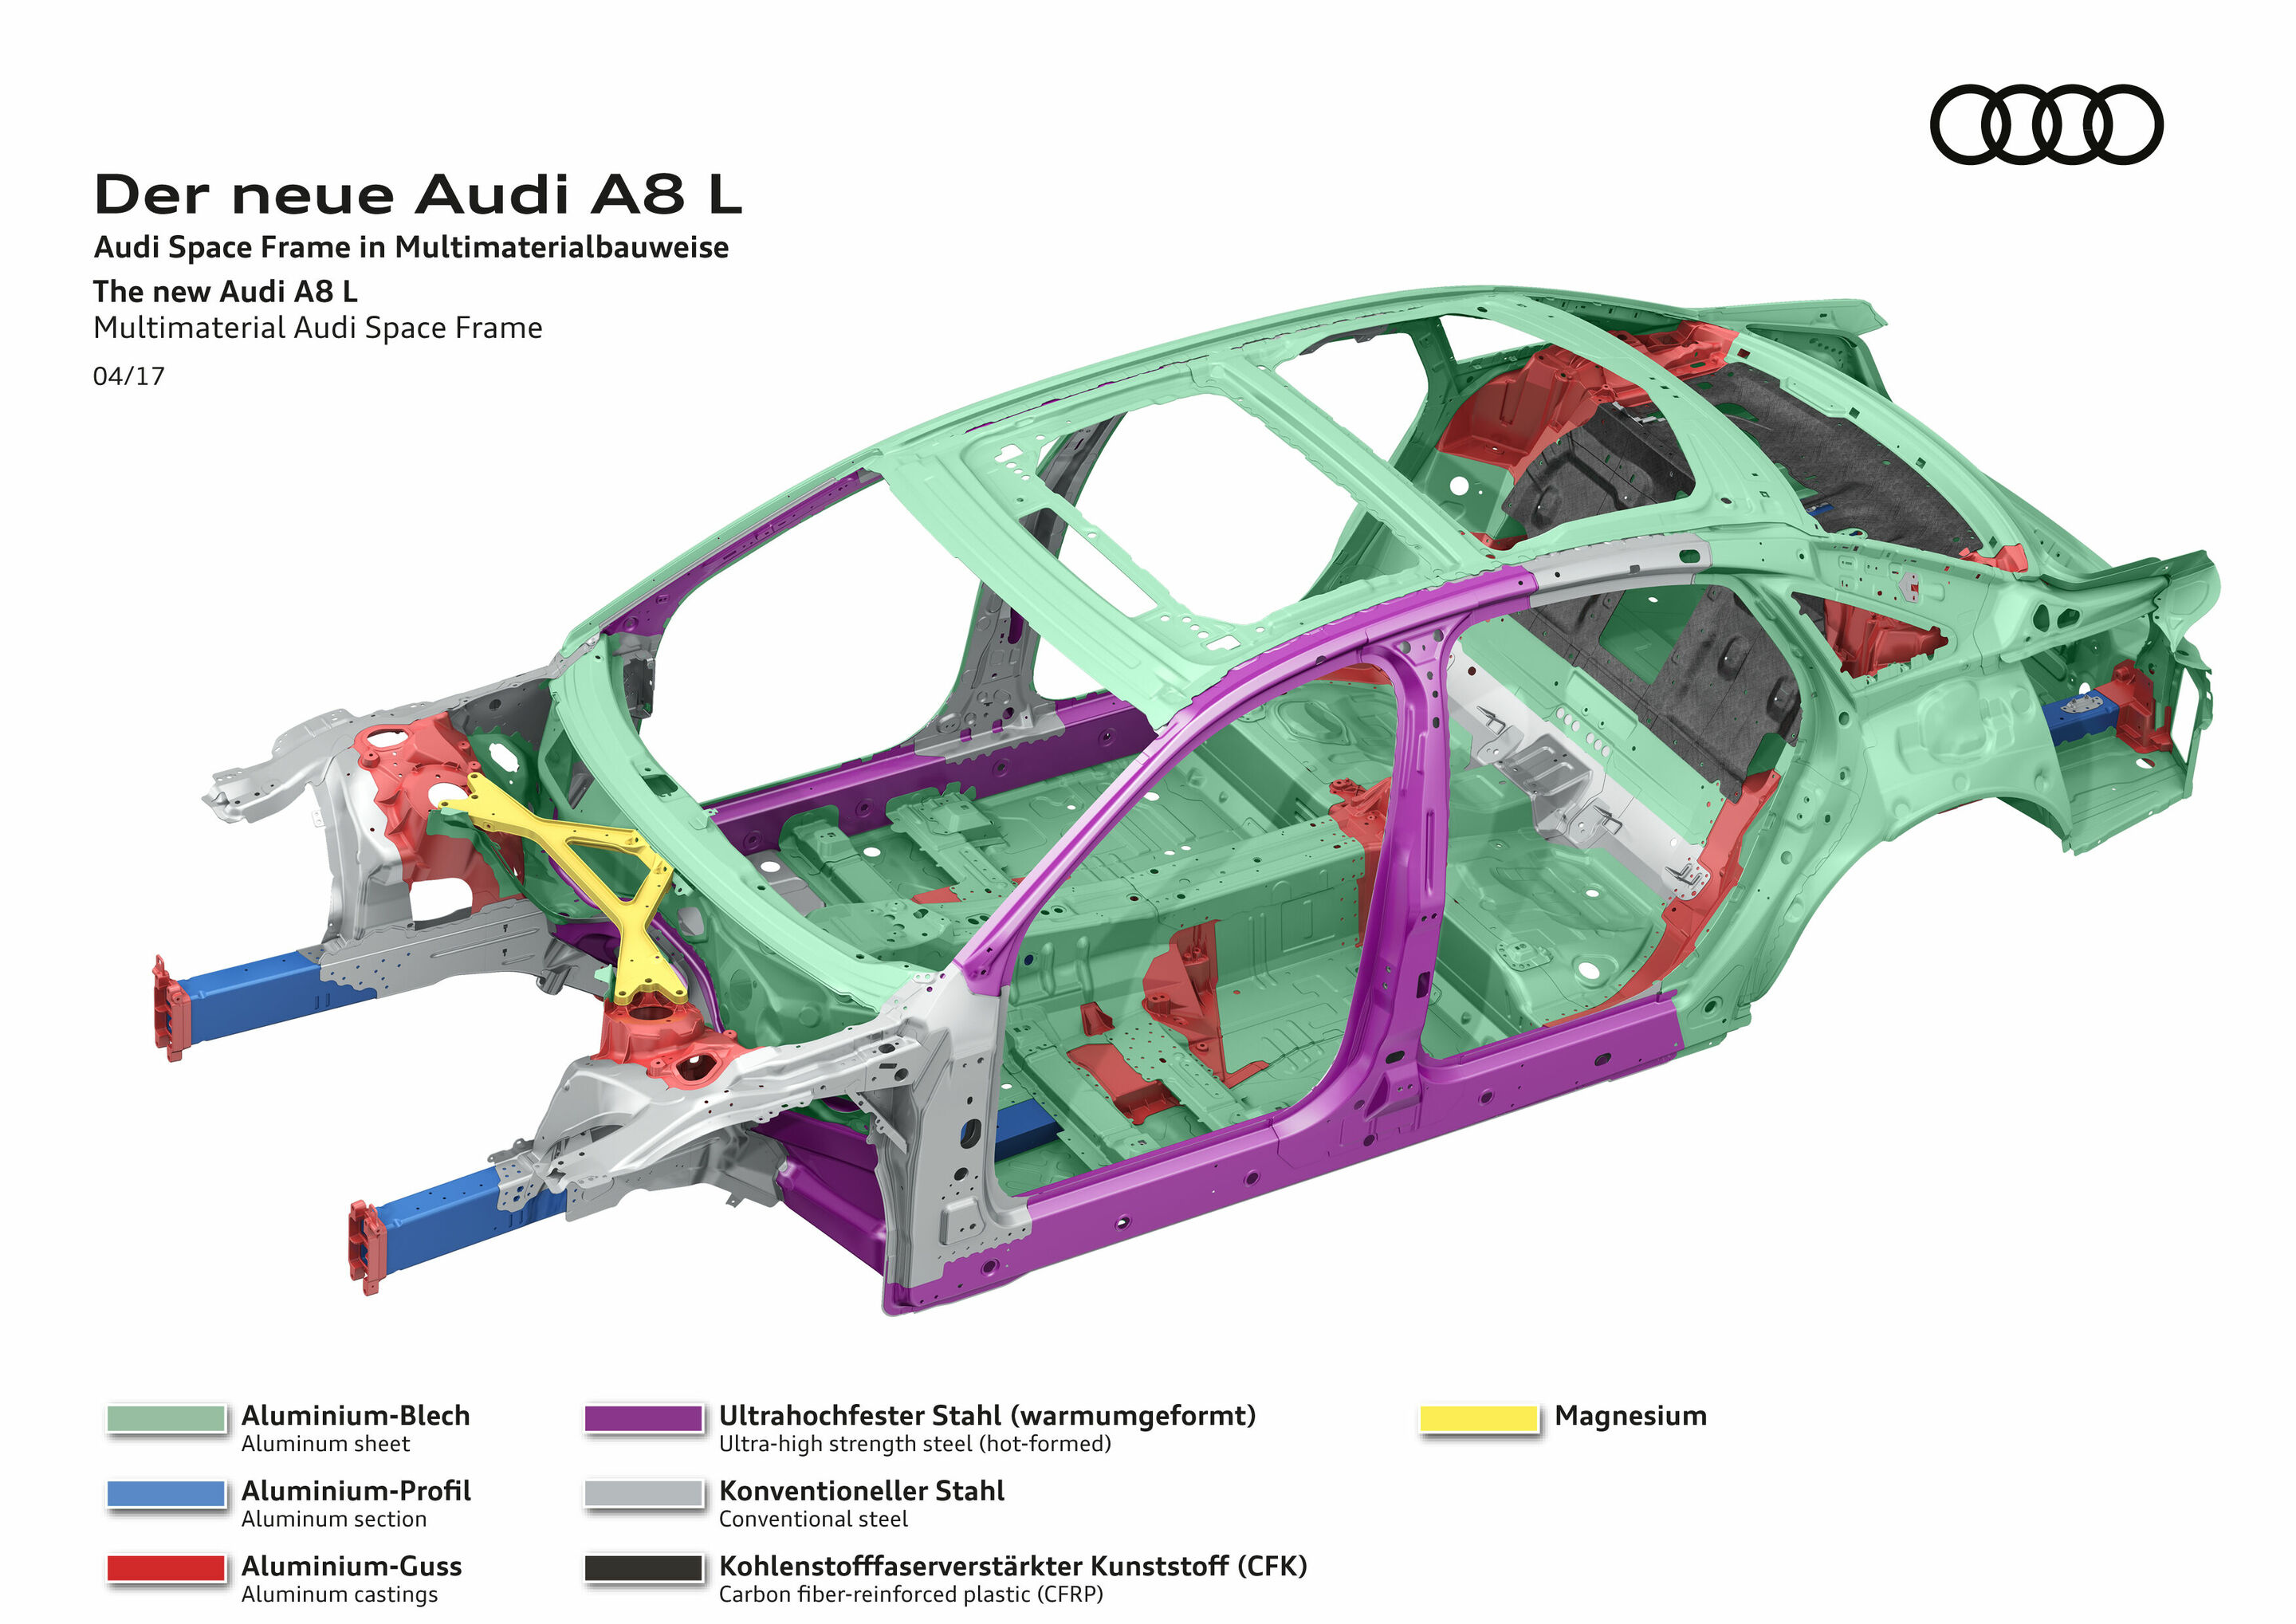 Der neue Audi A8 L